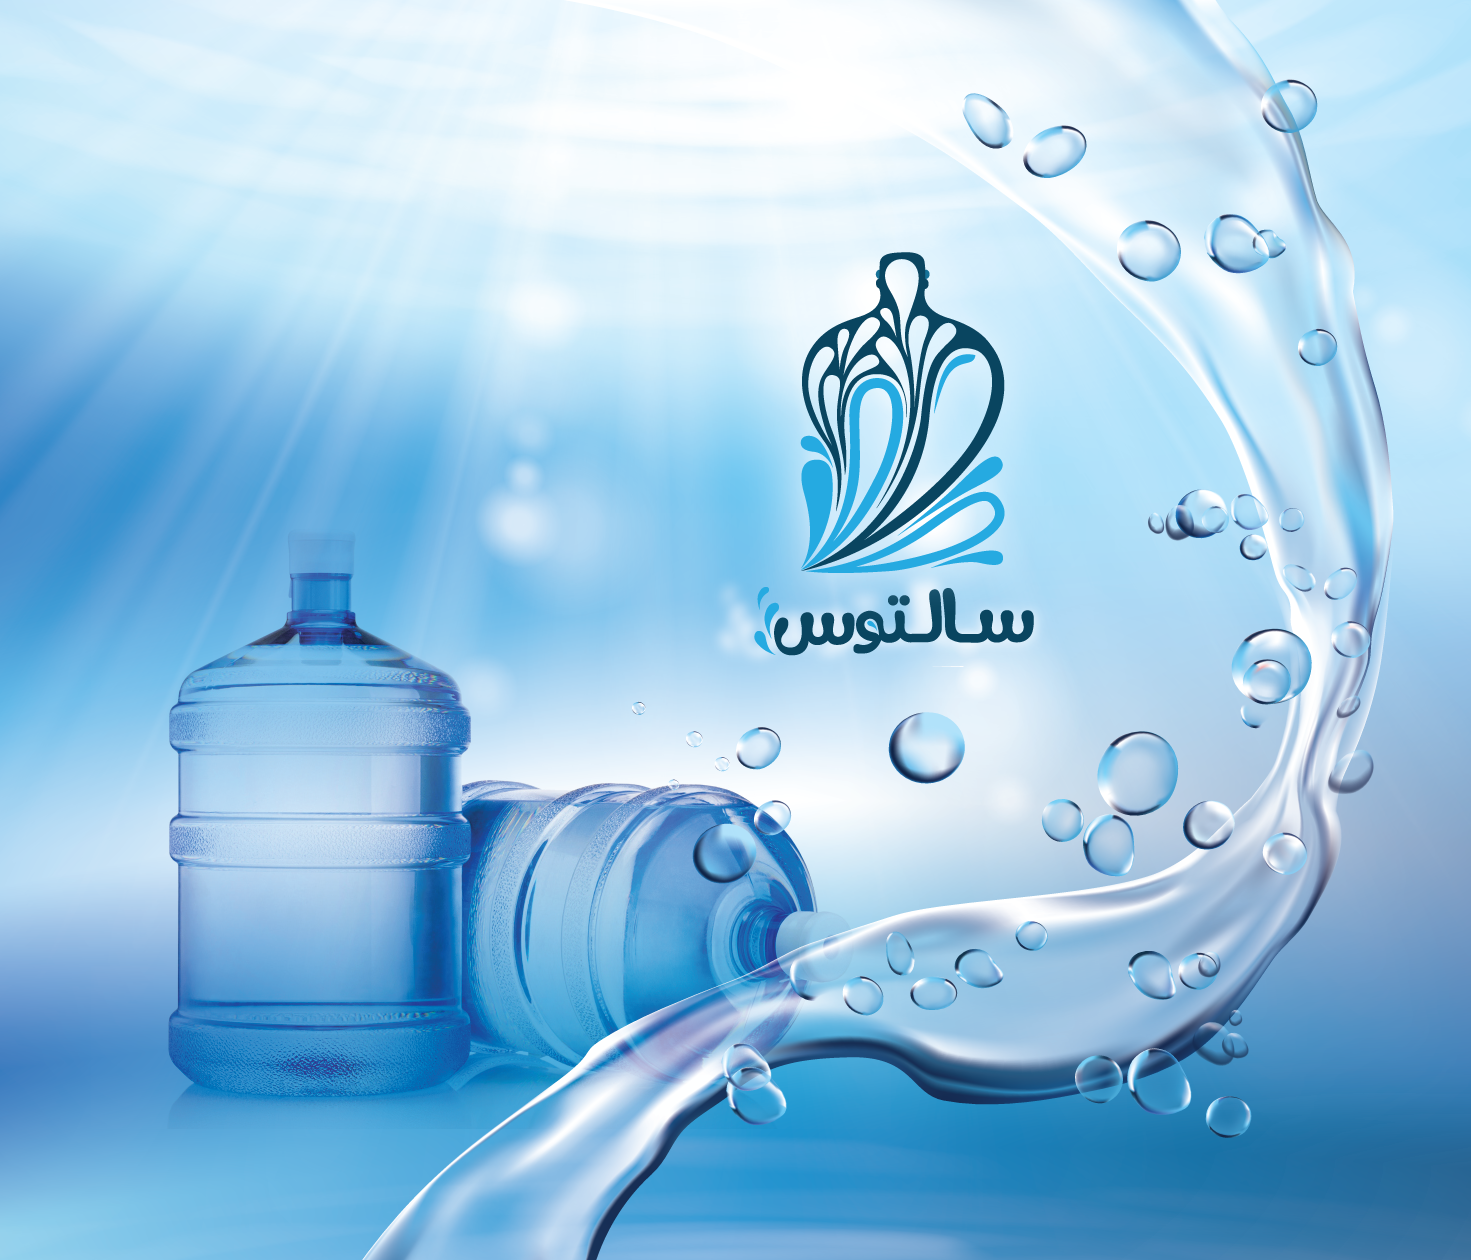 Вода питьевая телефоны. Эмблема воды. Питьевая вода лого. Водный логотип. Питьевая вода вектор.